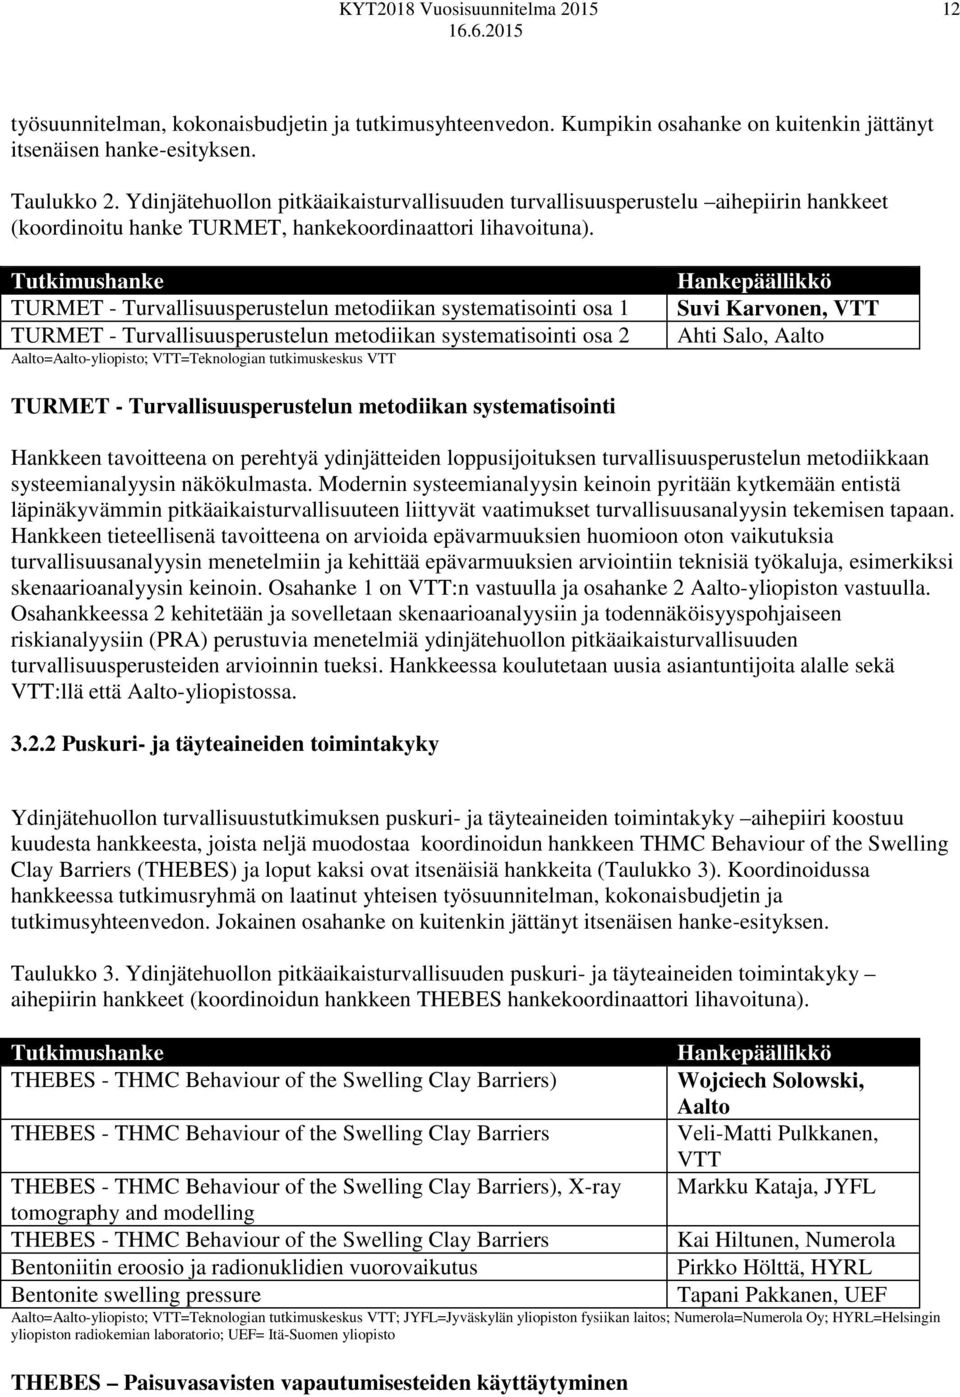 Tutkimushanke TURMET - Turvallisuusperustelun metodiikan systematisointi osa 1 TURMET - Turvallisuusperustelun metodiikan systematisointi osa 2 Aalto=Aalto-yliopisto; VTT=Teknologian tutkimuskeskus